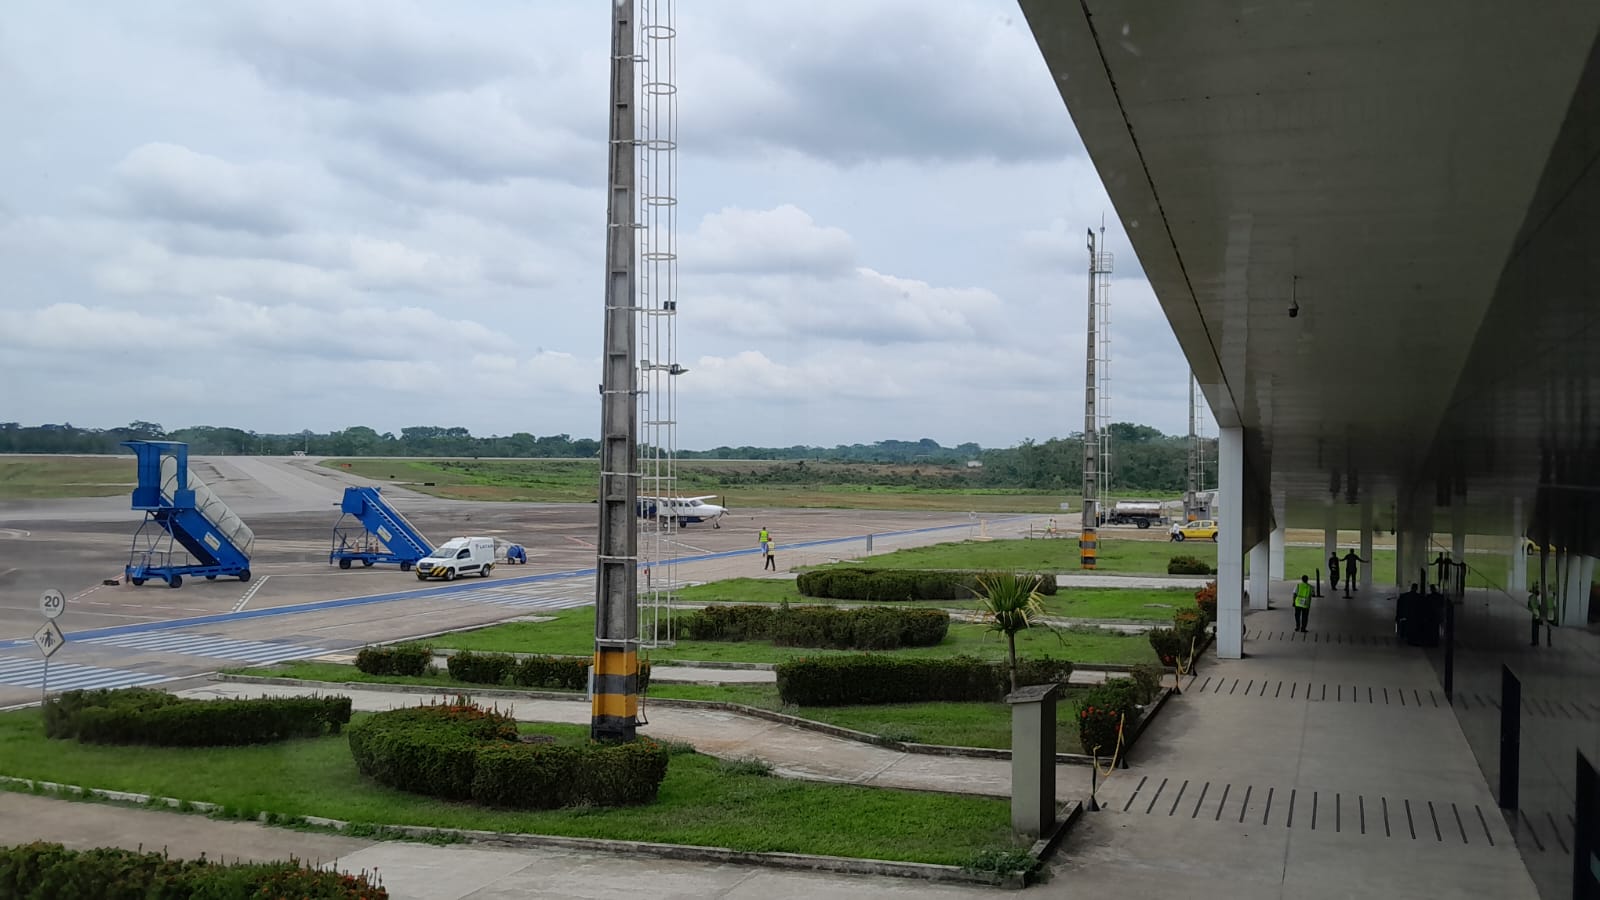 Instalação do sistema Elo no aeroporto de Rio Branco (AC)